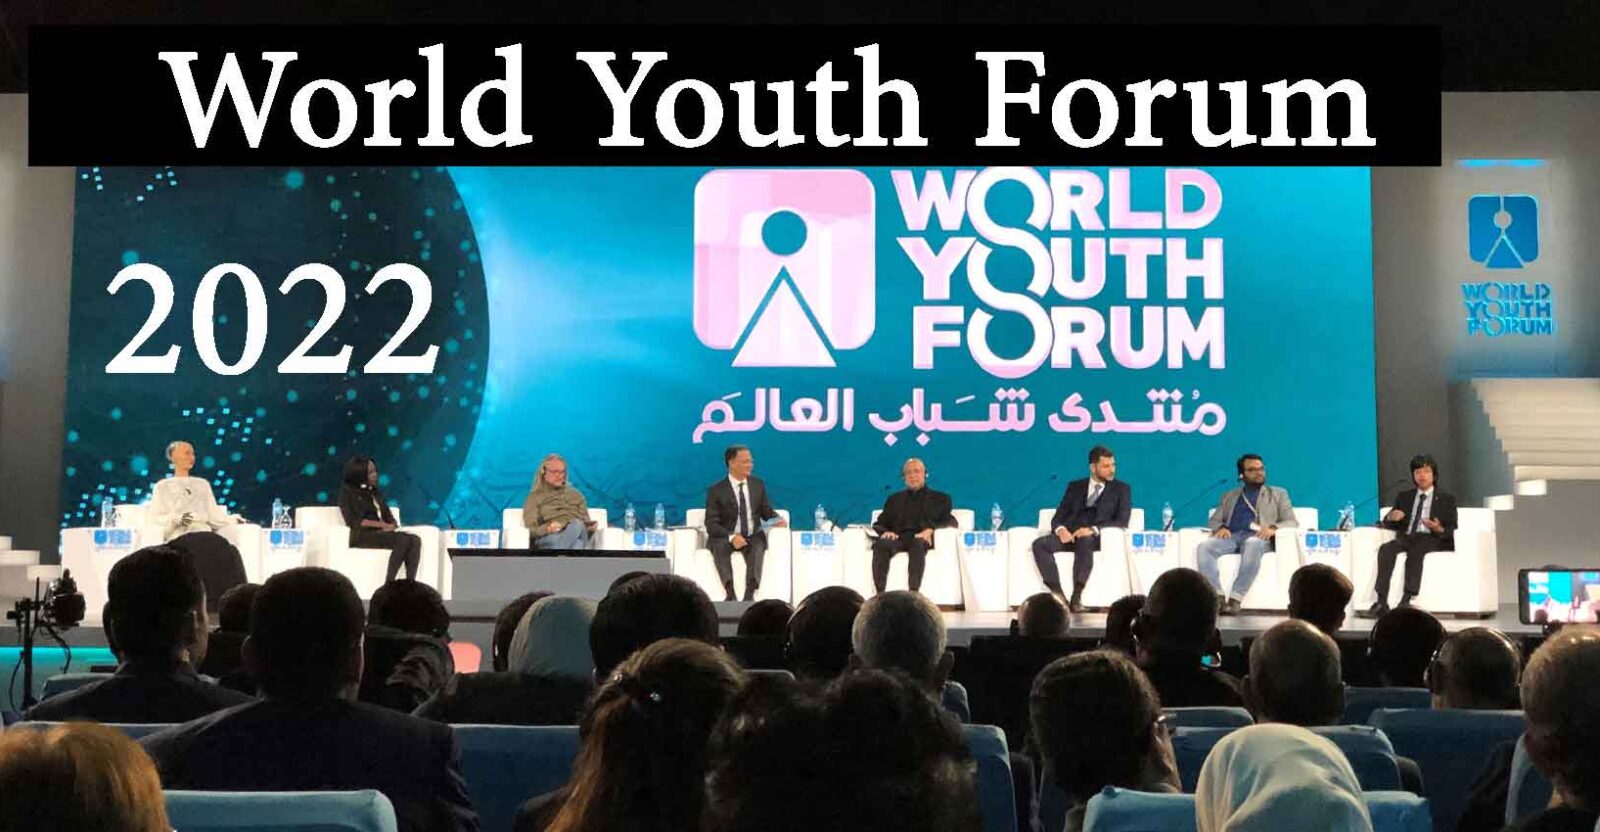 فرصة حضور منتدى شباب العالم 2022 في مصر |ممول بالكامل